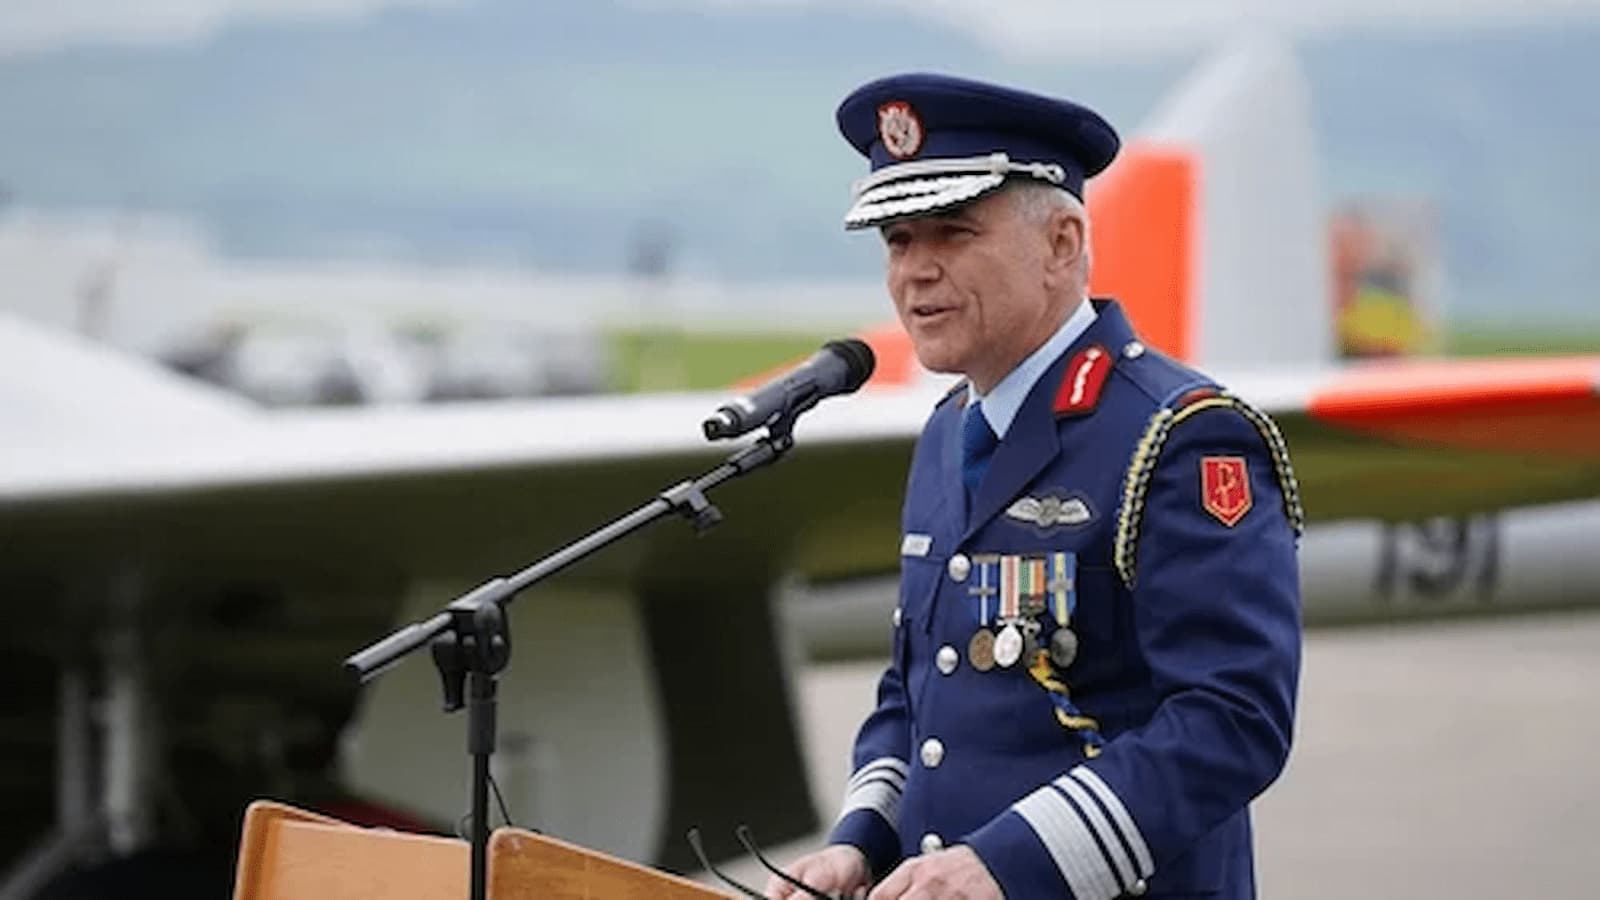 Ireland Defence Forces Chief, Seán Clancy